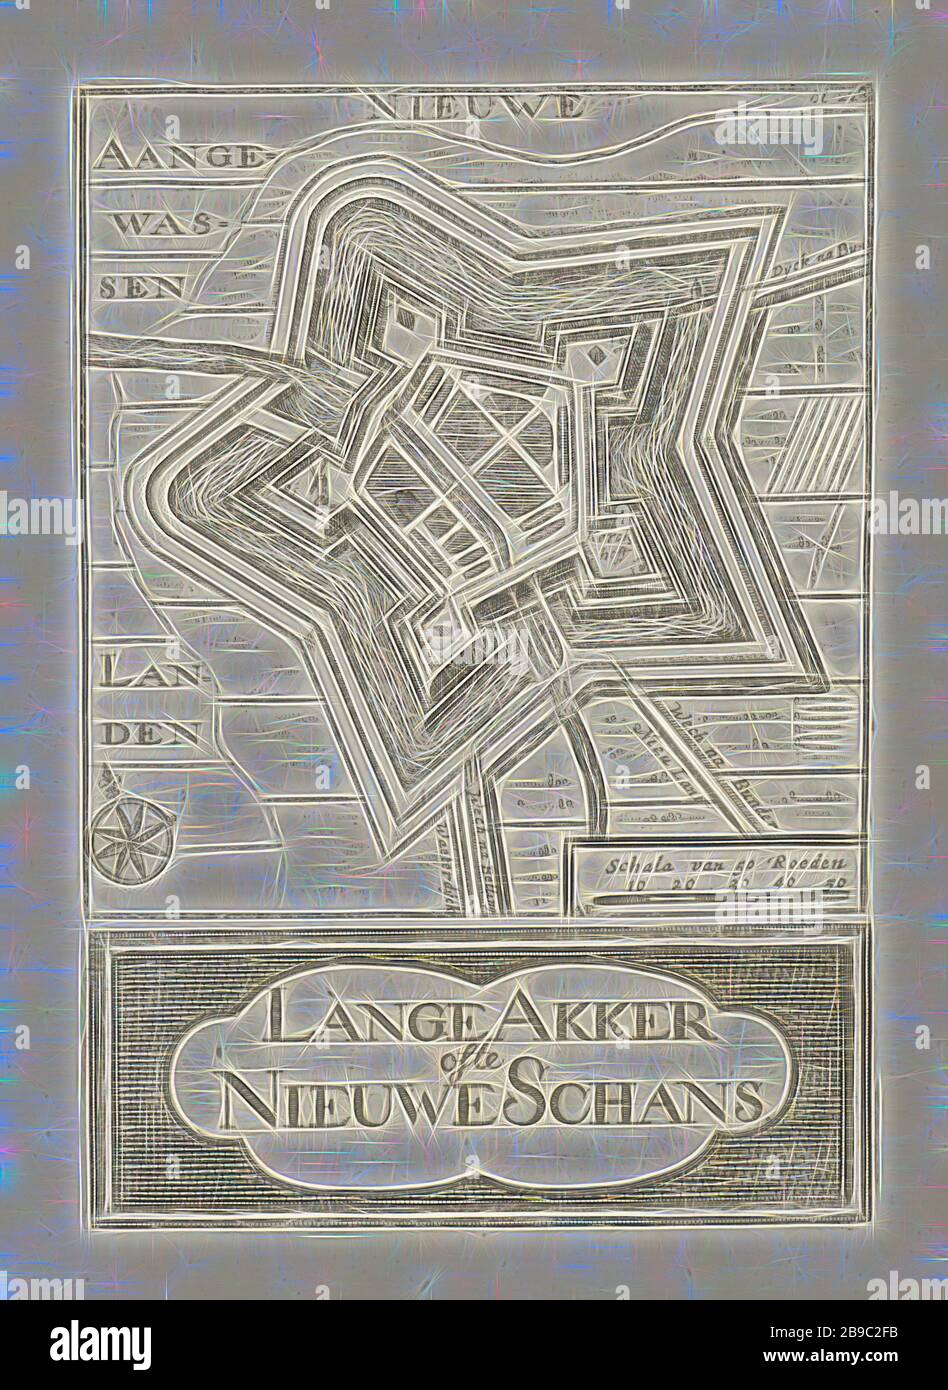 Carte de Nieuweschans Lange Akker des Nieuwe Schans (titre sur objet), deux tirages sur une feuille: En haut un imprimé avec une représentation d'une carte de Nieuweschans et en dessous d'un imprimé avec le titre dans une cartouche. Dans l'impression supérieure en bas à droite, une échelle et en haut à droite : bl. 228, cartes, atlas, Nieuweschans, Hendrik Hofsnider (mentionné sur l'objet), Groningue, 1743, papier, gravure, h 101 mm × W 97 mm × h 38 mm × W 97 mm, repensé par Gibon, design de brillant gai chaud de luminosité et de rayonnement lumineux. L'art classique réinventé avec une touche moderne. Photographie inspirée du futurisme, embra Banque D'Images